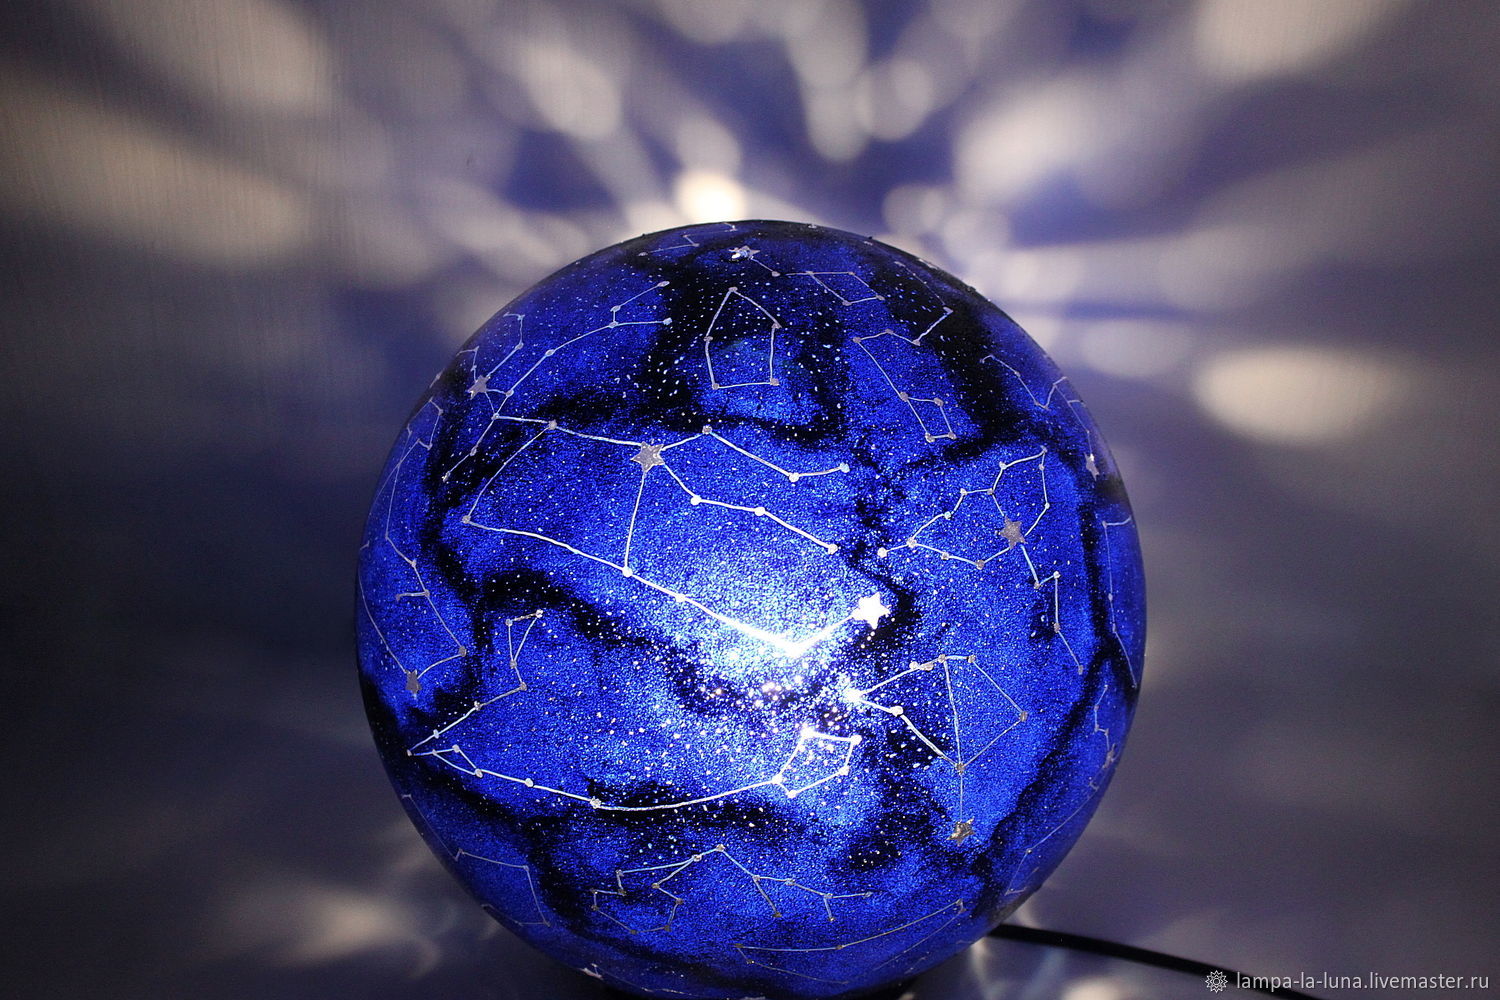 Космический ночник - Небесная сфера (25 см) Шар созвездий, Ночники, Санкт-Петербург,  Фото №1